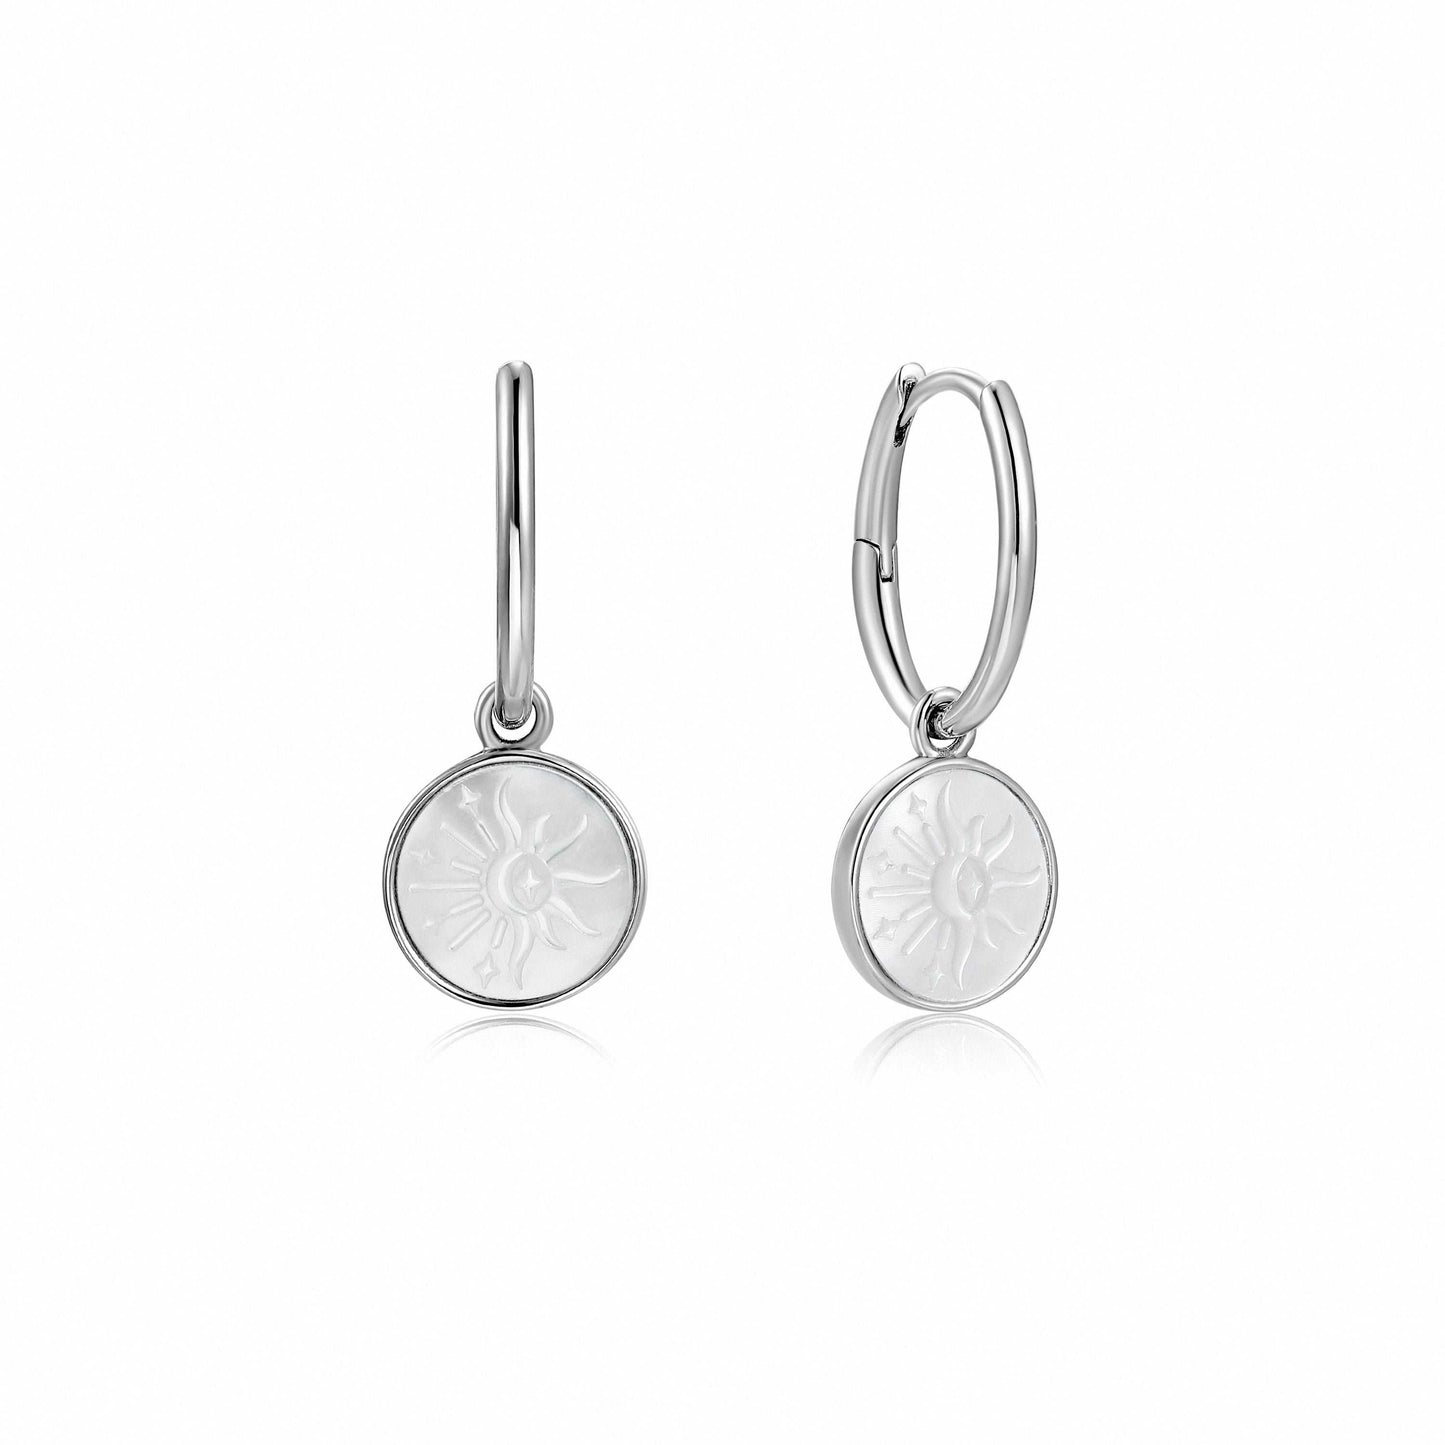 Ania Haie Sunbeam Emblem Silver Huggie Hoop Earrings - Silver Earrings